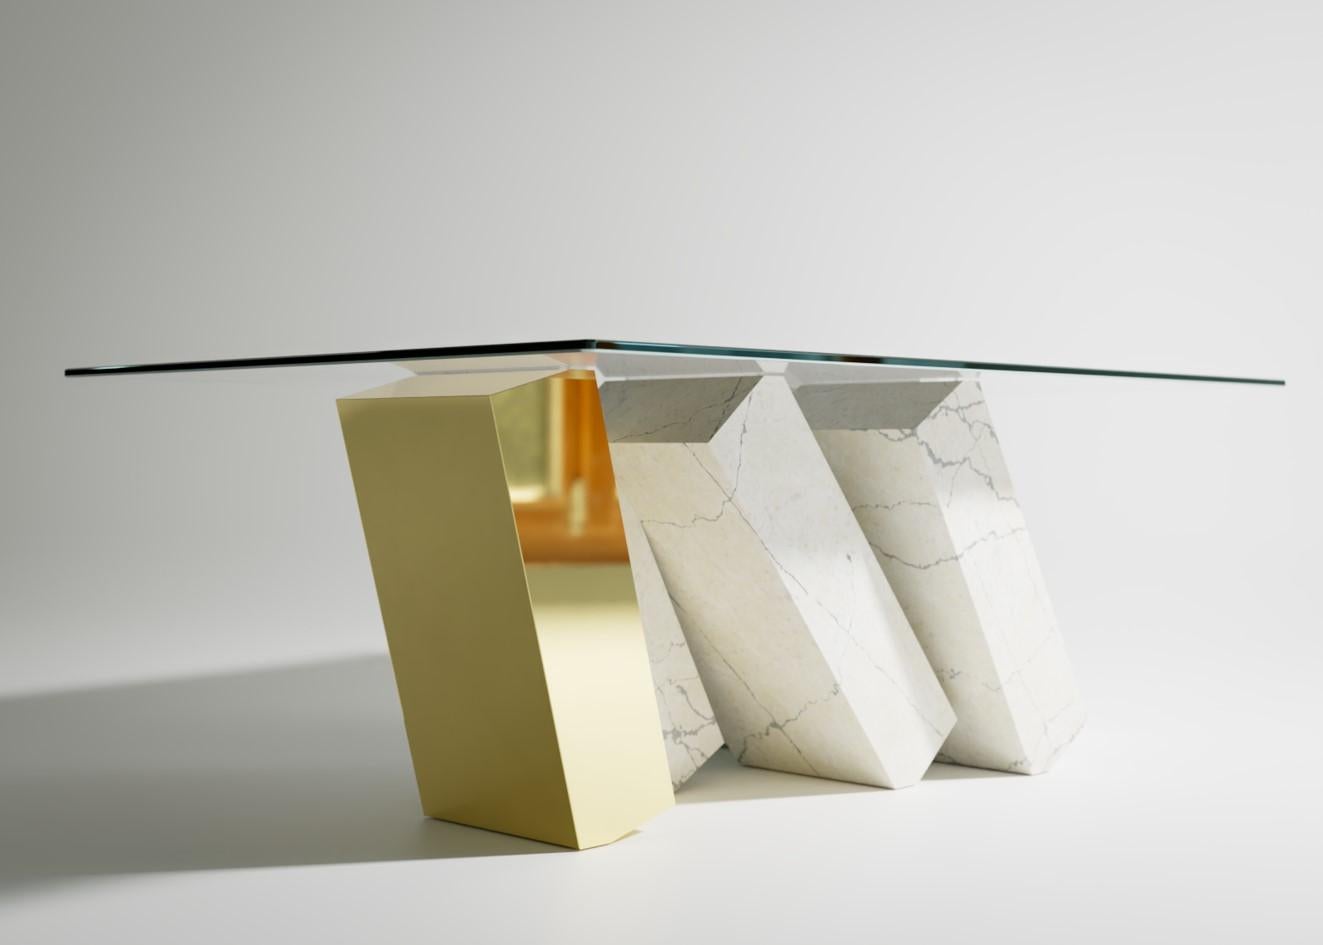 La table basse Megalith est une nouvelle addition frappante à la collection Megalith ; une pièce éblouissante de mobilier moderne de Christopher Duffy, et un ajout luxueux à l'espace de vie.

Une table en verre est en équilibre sur une série de